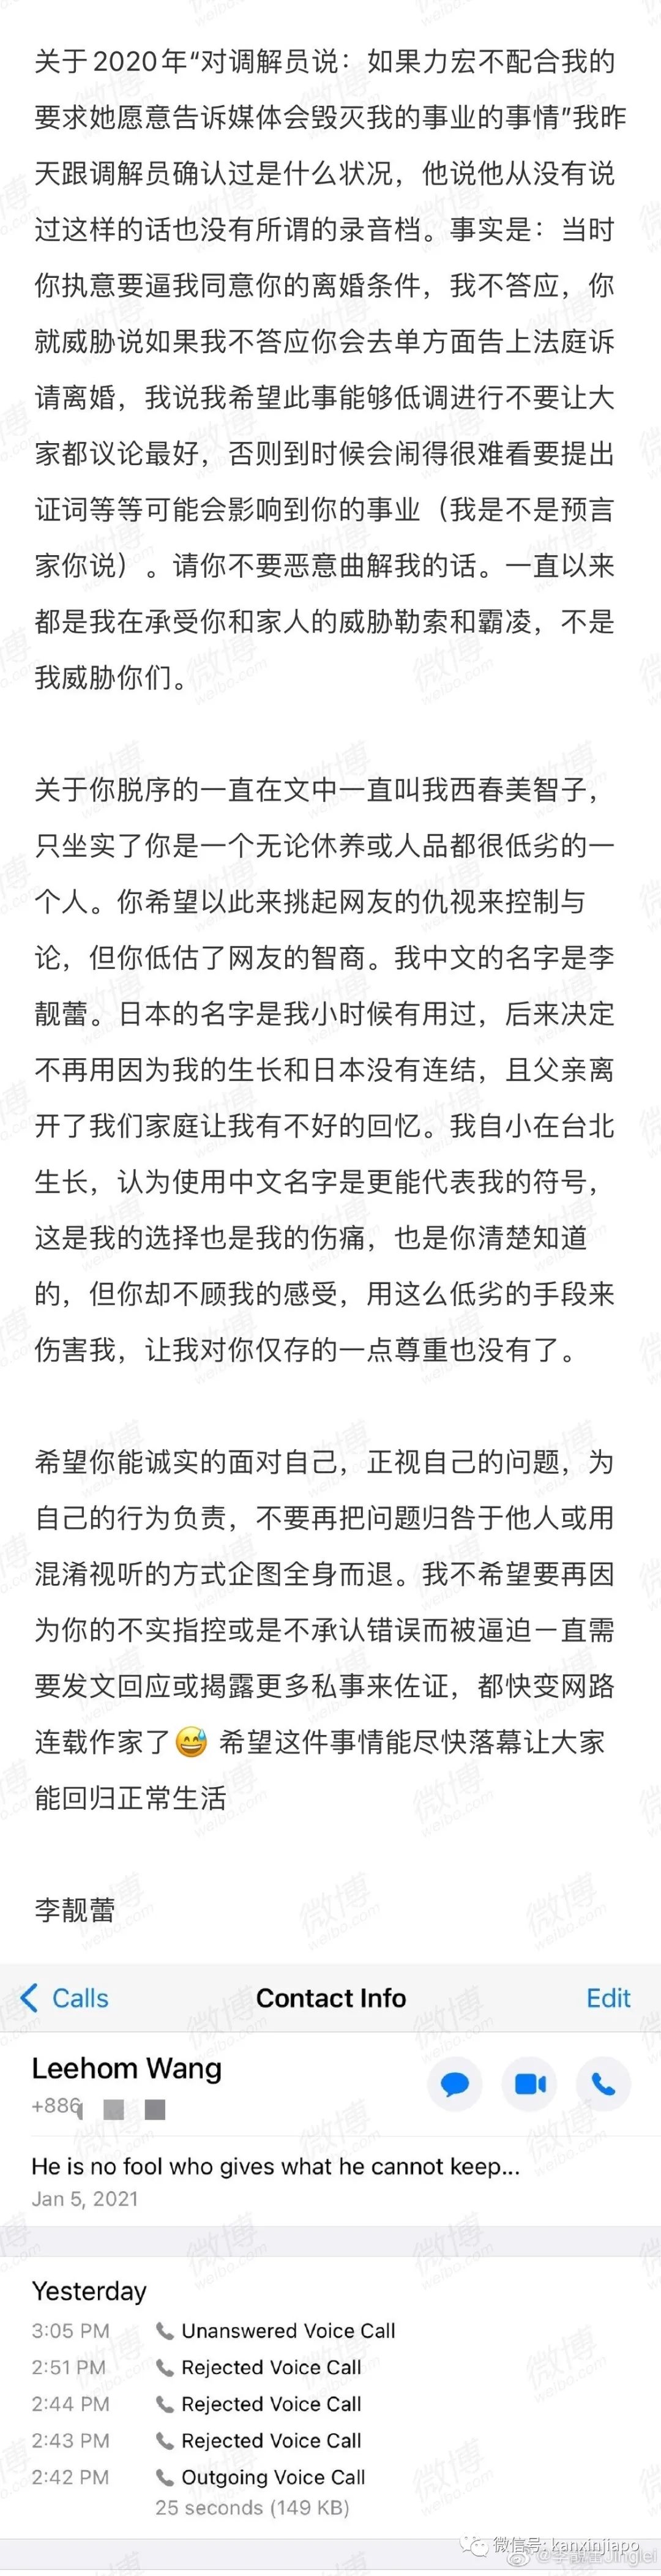 王力宏道歉，称暂时退出娱乐圈；环球时报评论：这不够，必须凉！